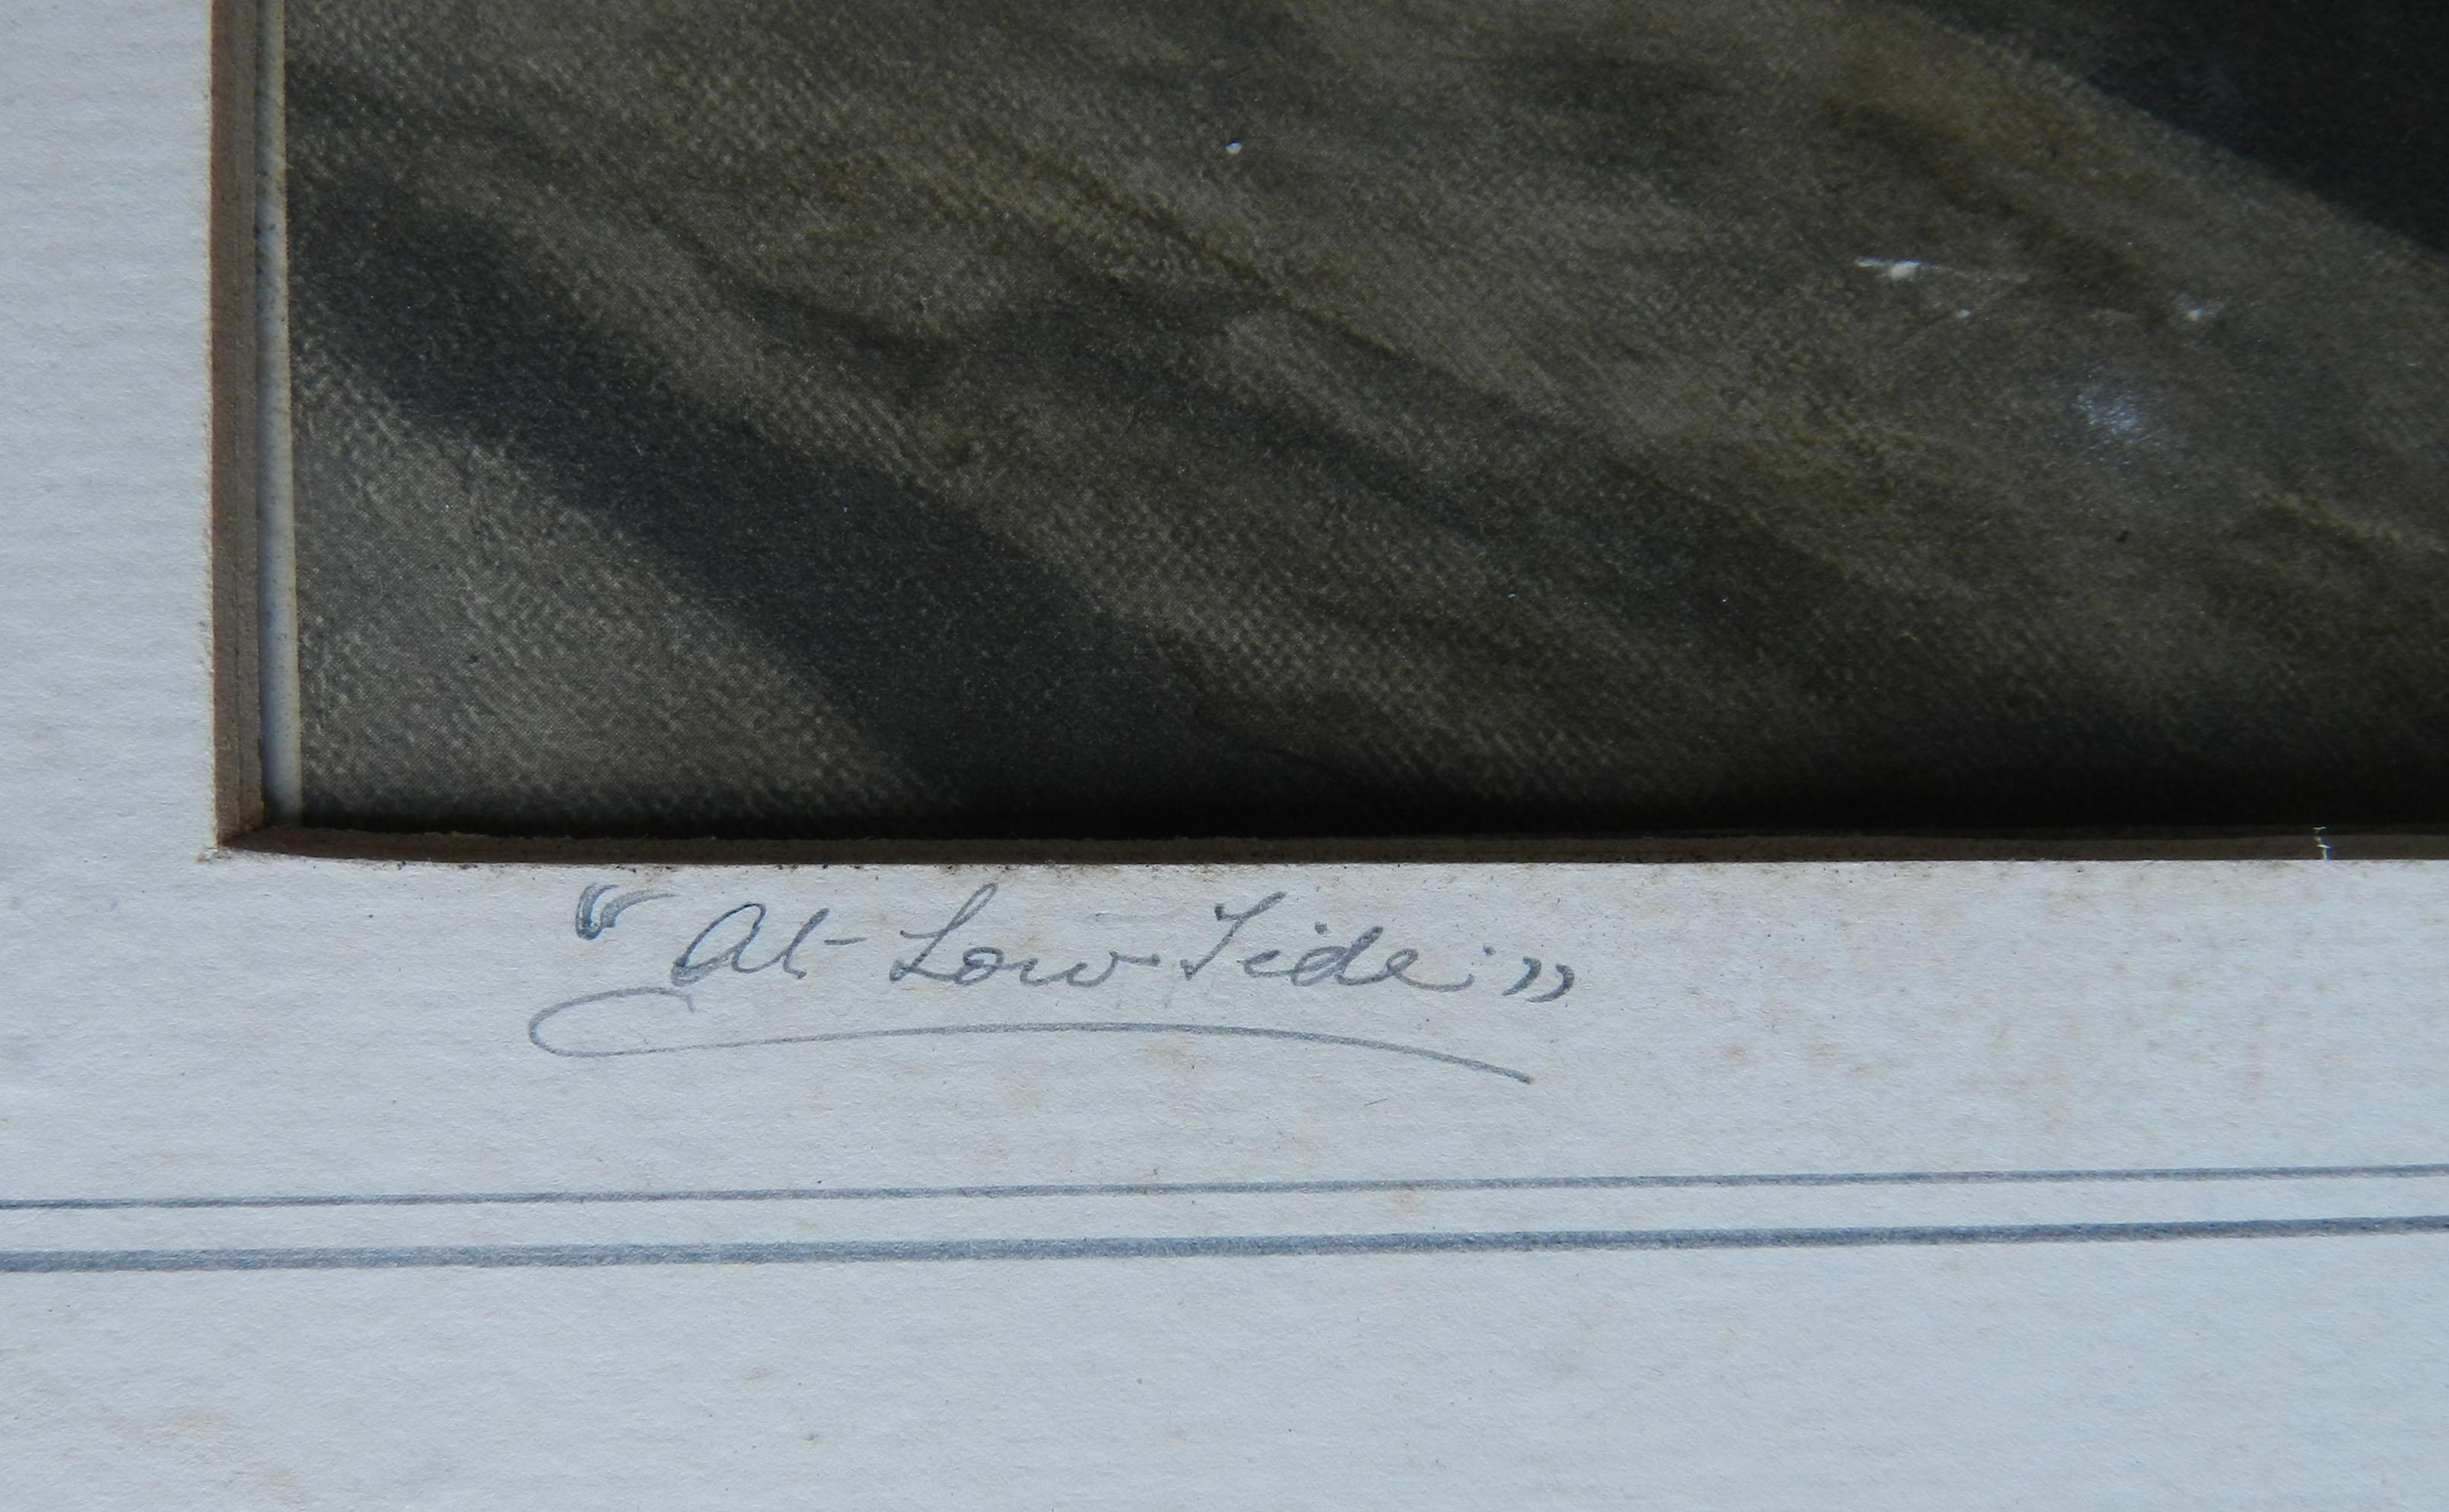 Bei Ebbe von Sir Edward J Poynter 1832-1919
Dies ist ein alter Druck mit seiner Unterschrift darauf
Guter Zustand Es hat sehr kleine kleine Flecken bitte siehe Fotos
Sir Edward John Poynter
1st Baronet GCVO, PRA (20. März 1836 - 26. Juli 1919) war